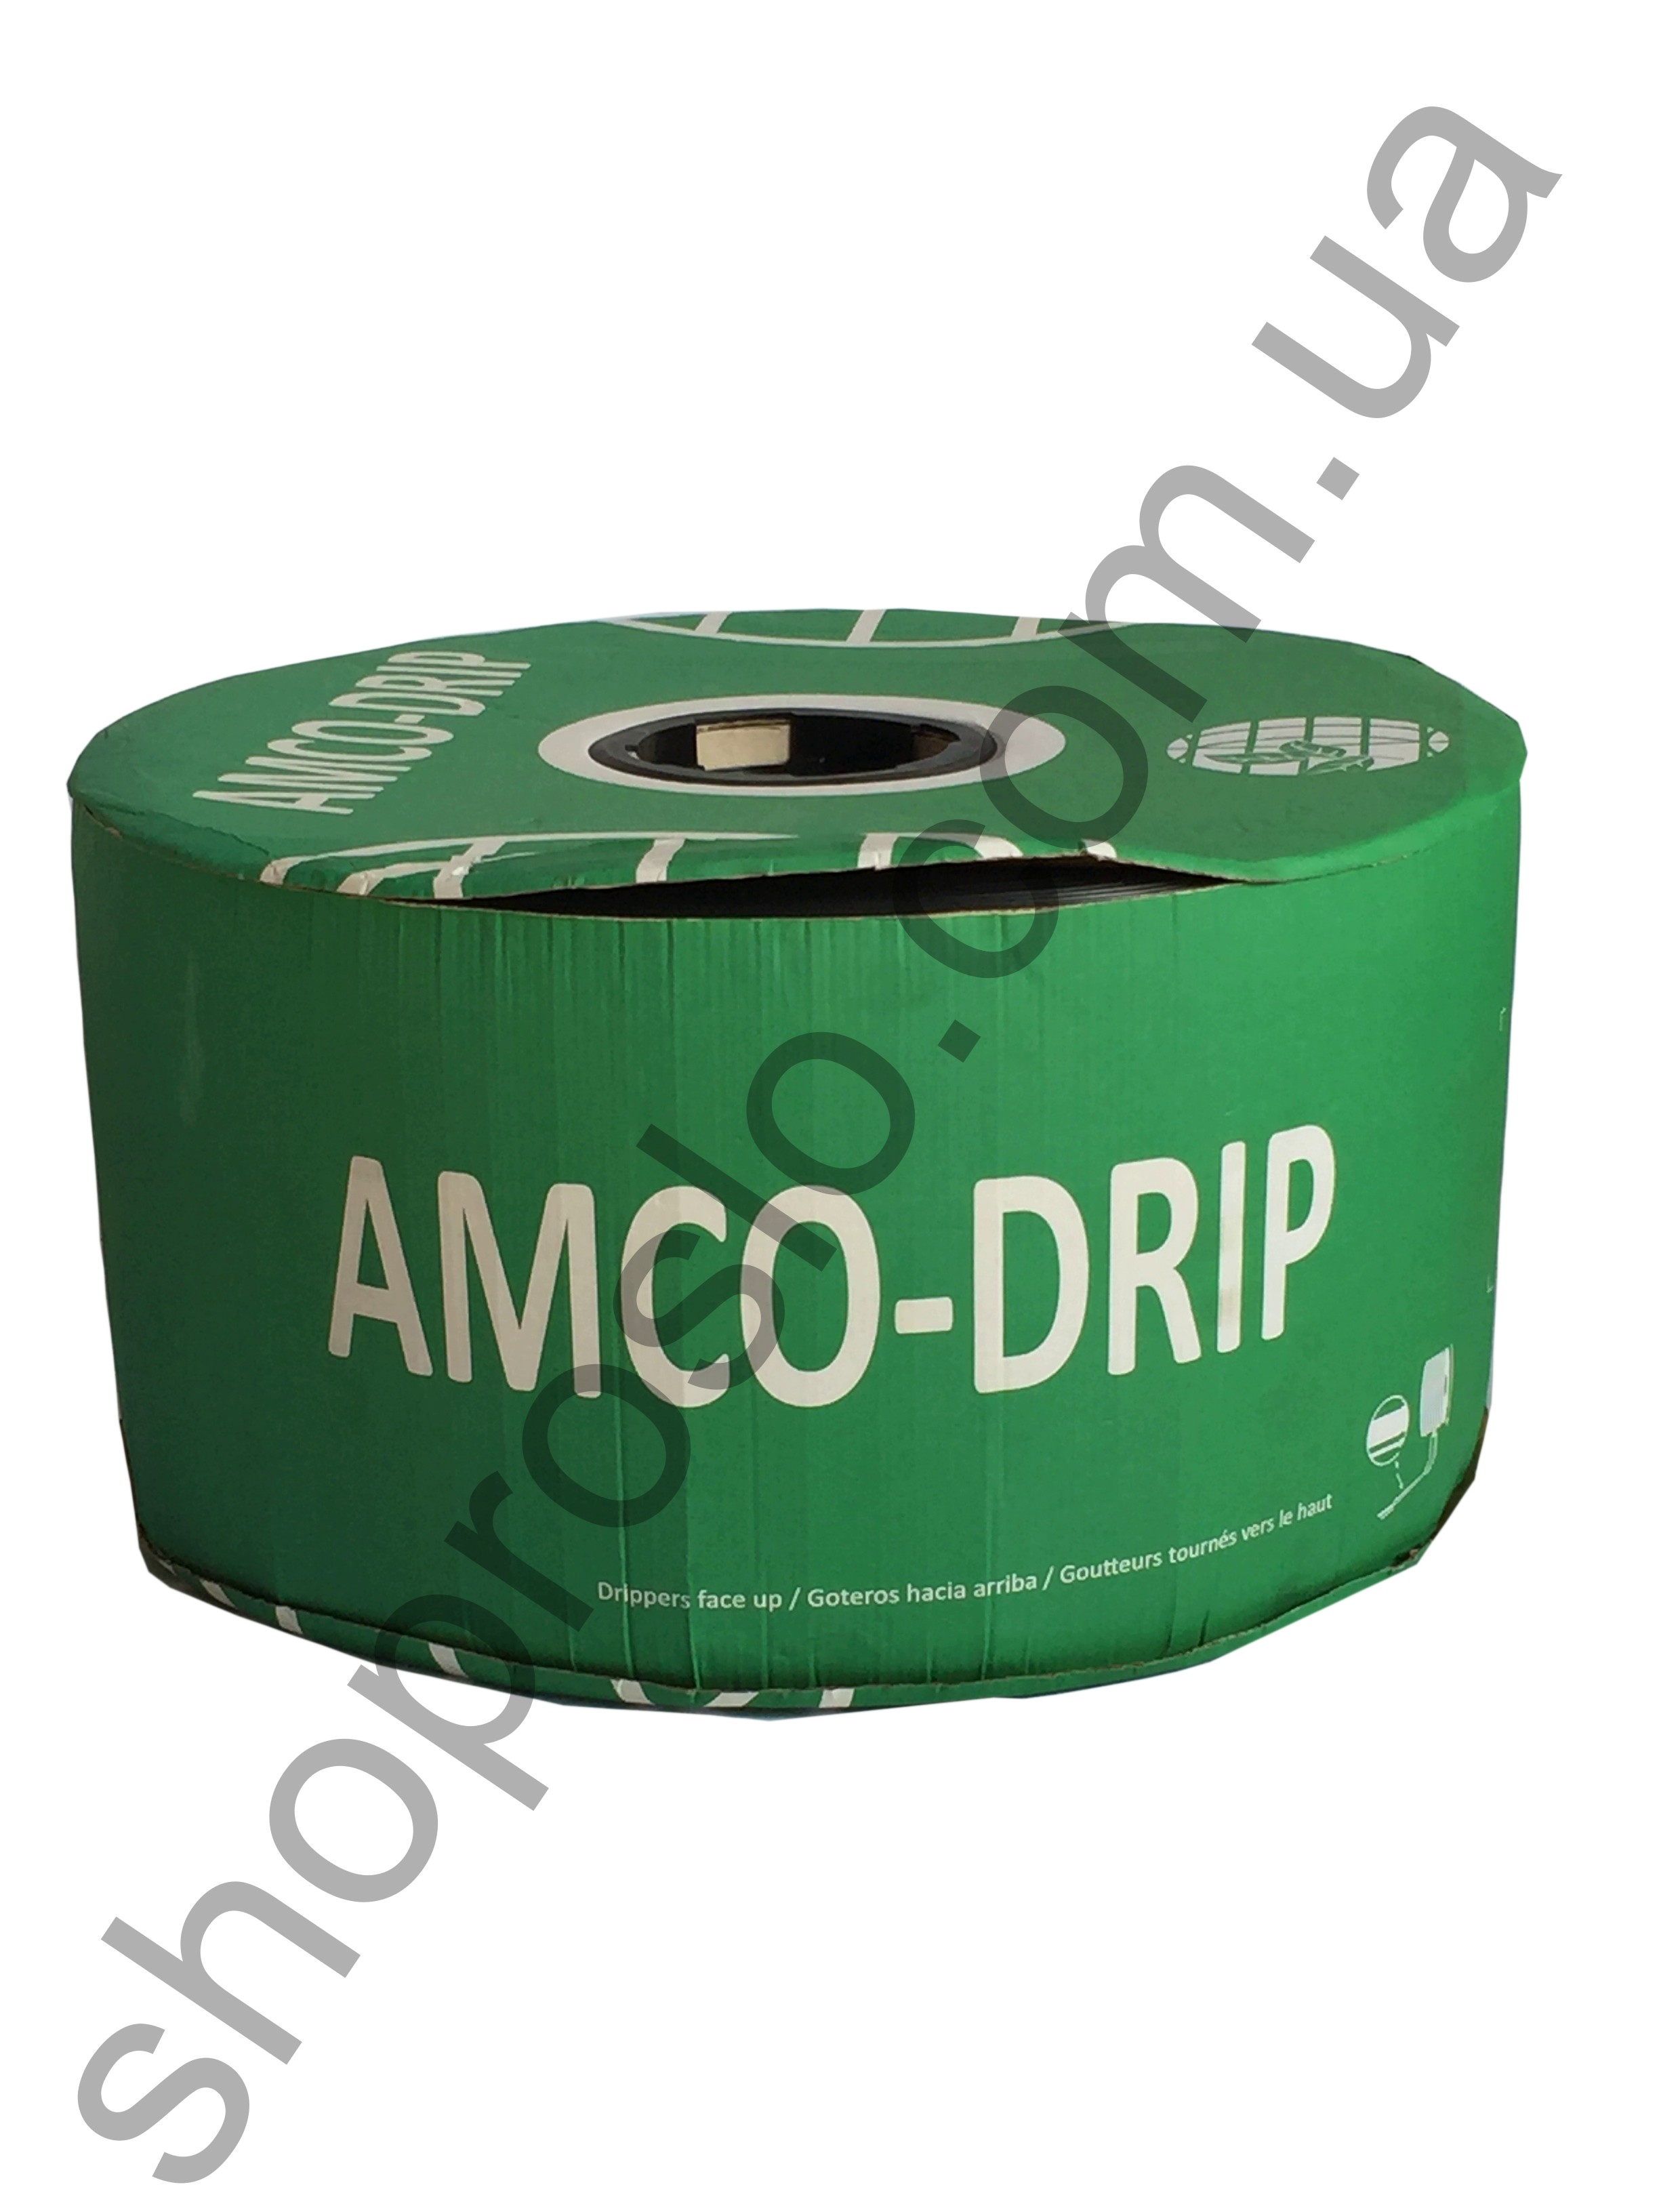 Капельная лента 6 mil/20 см, водовылив 1,0 л/ч, щелевая, 3050 м. "Amco-drip" (Франция)